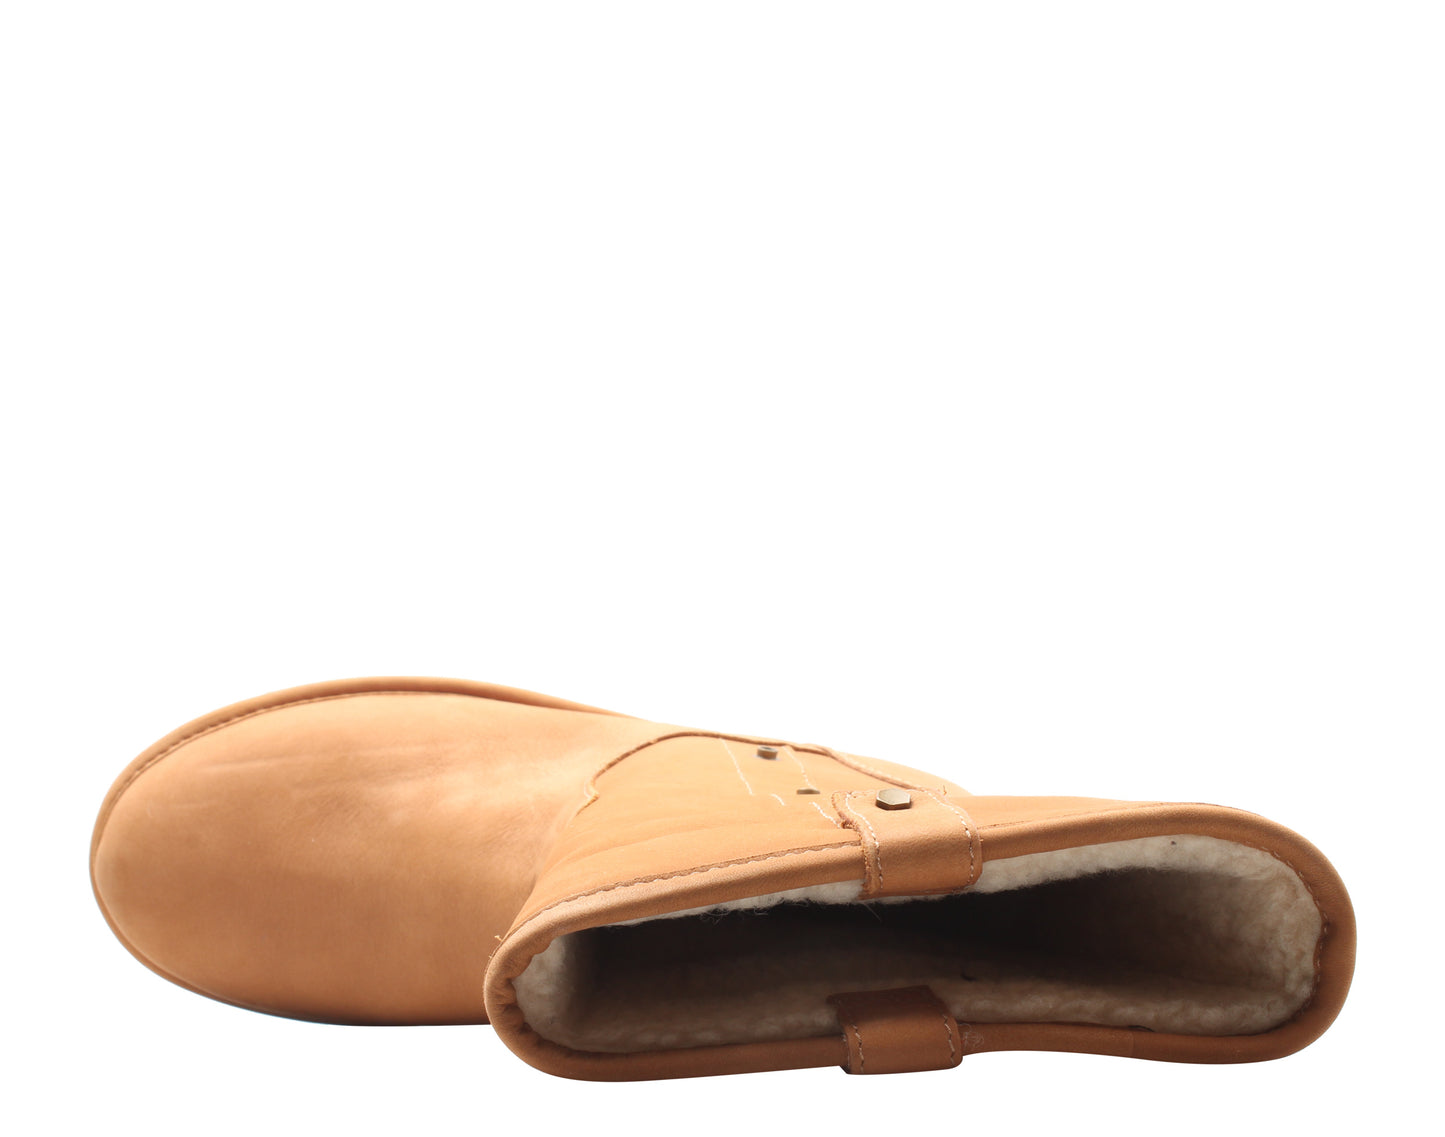 UGG Australia Malindi Chestnut Women's Boots 1013007-CHE